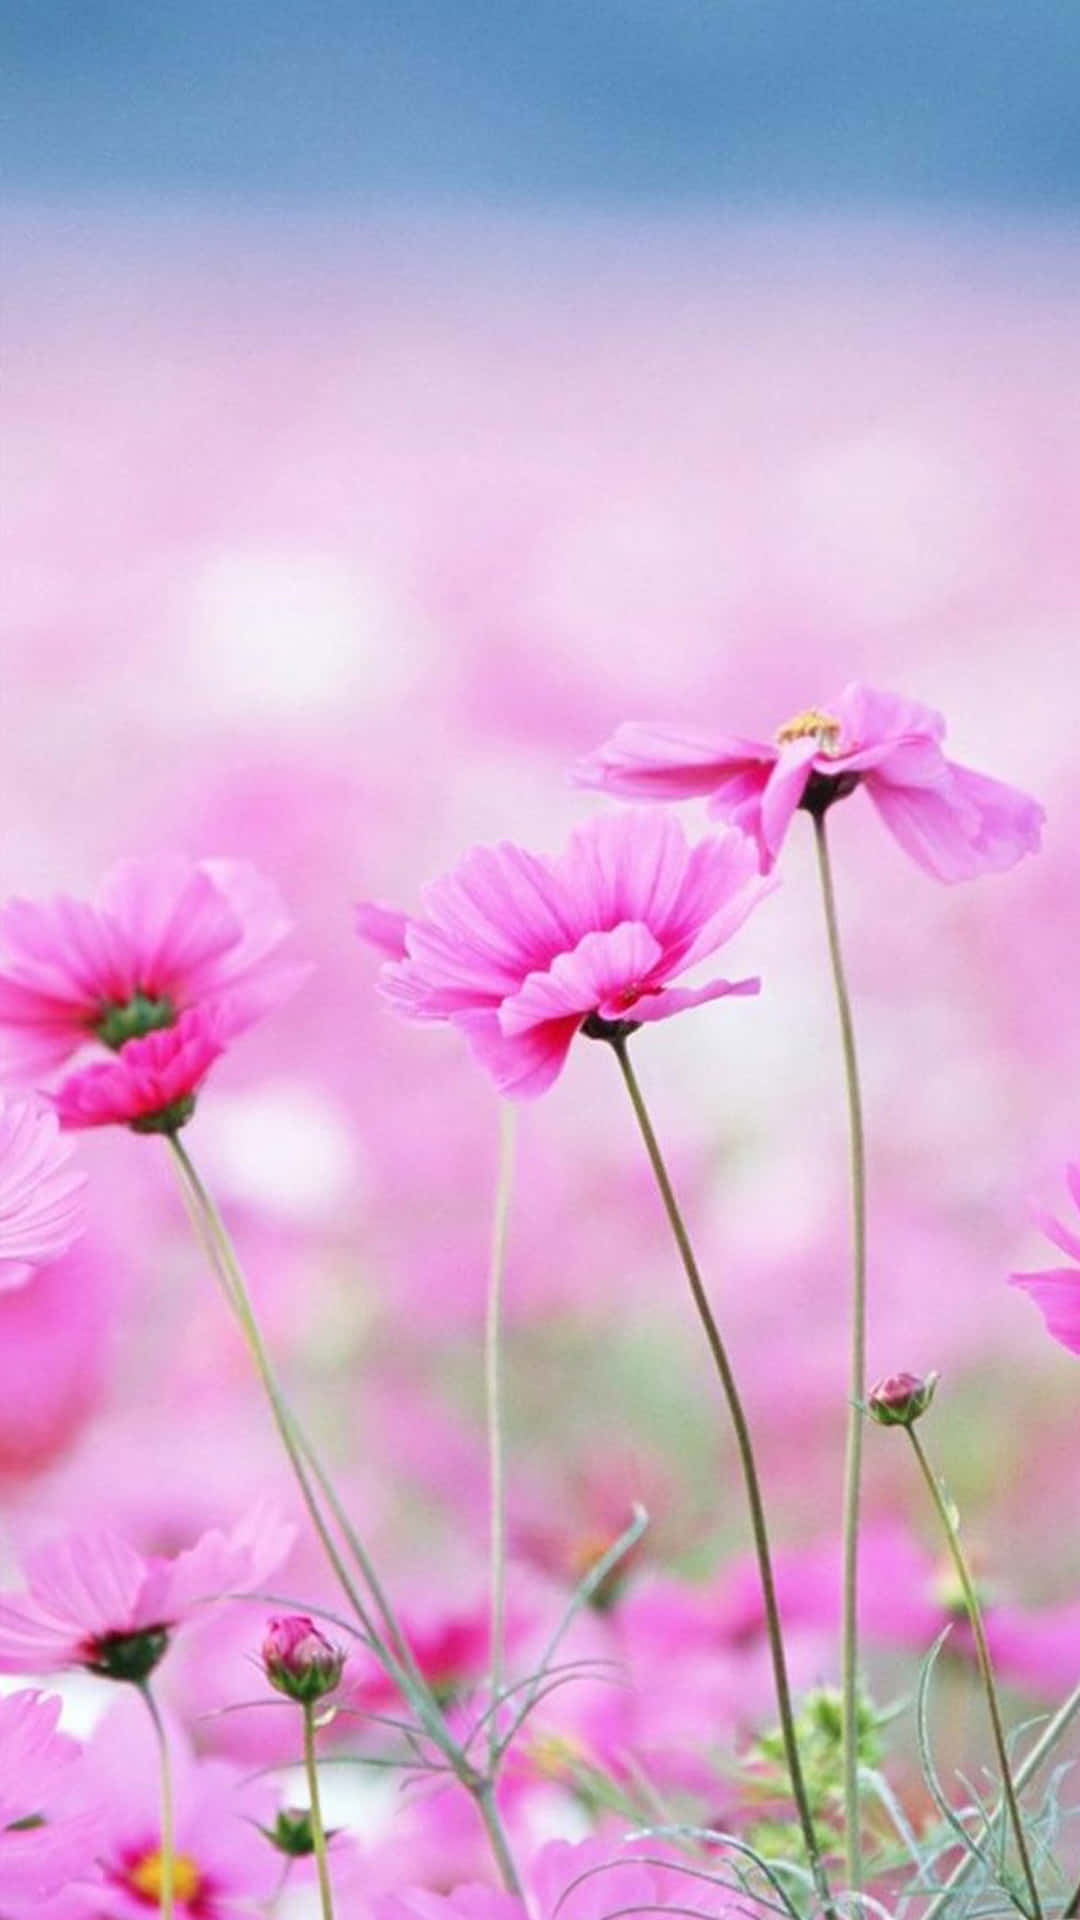 Tómateun Descanso Y Admira La Belleza De Las Flores Del Iphone. Fondo de pantalla